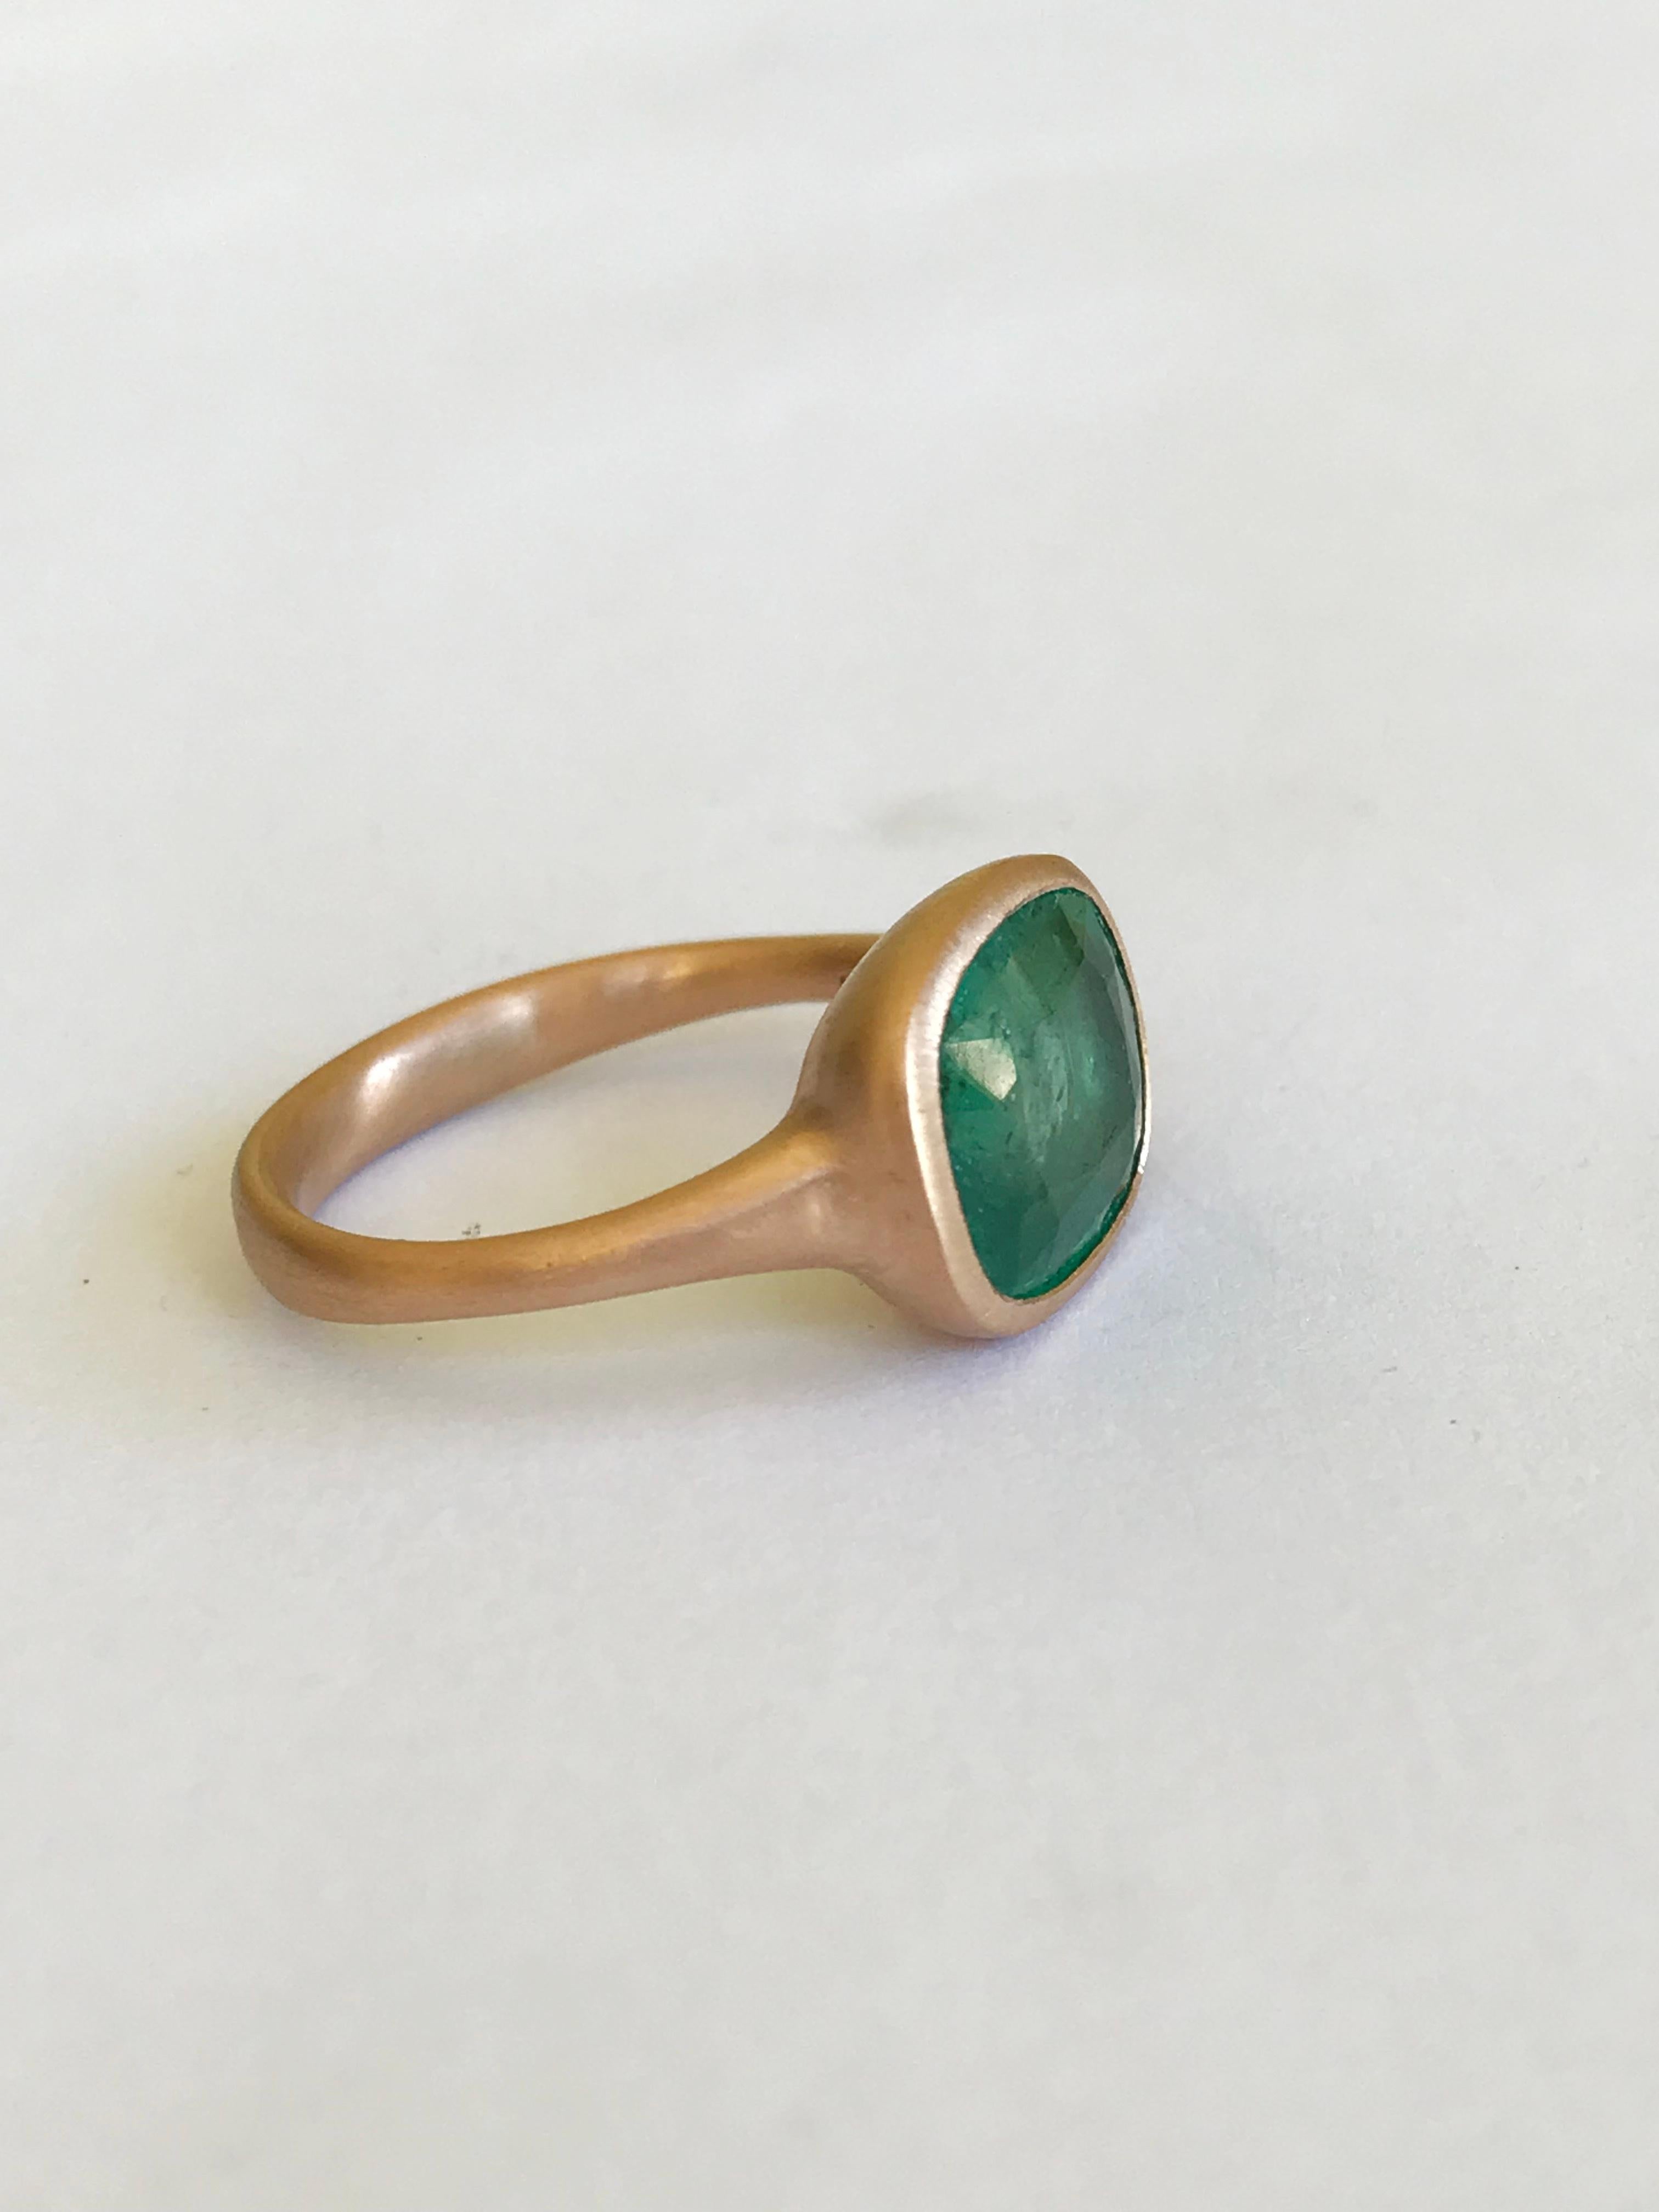 Dalben 4, 07 Carat Emerald Rose Gold Ring 5